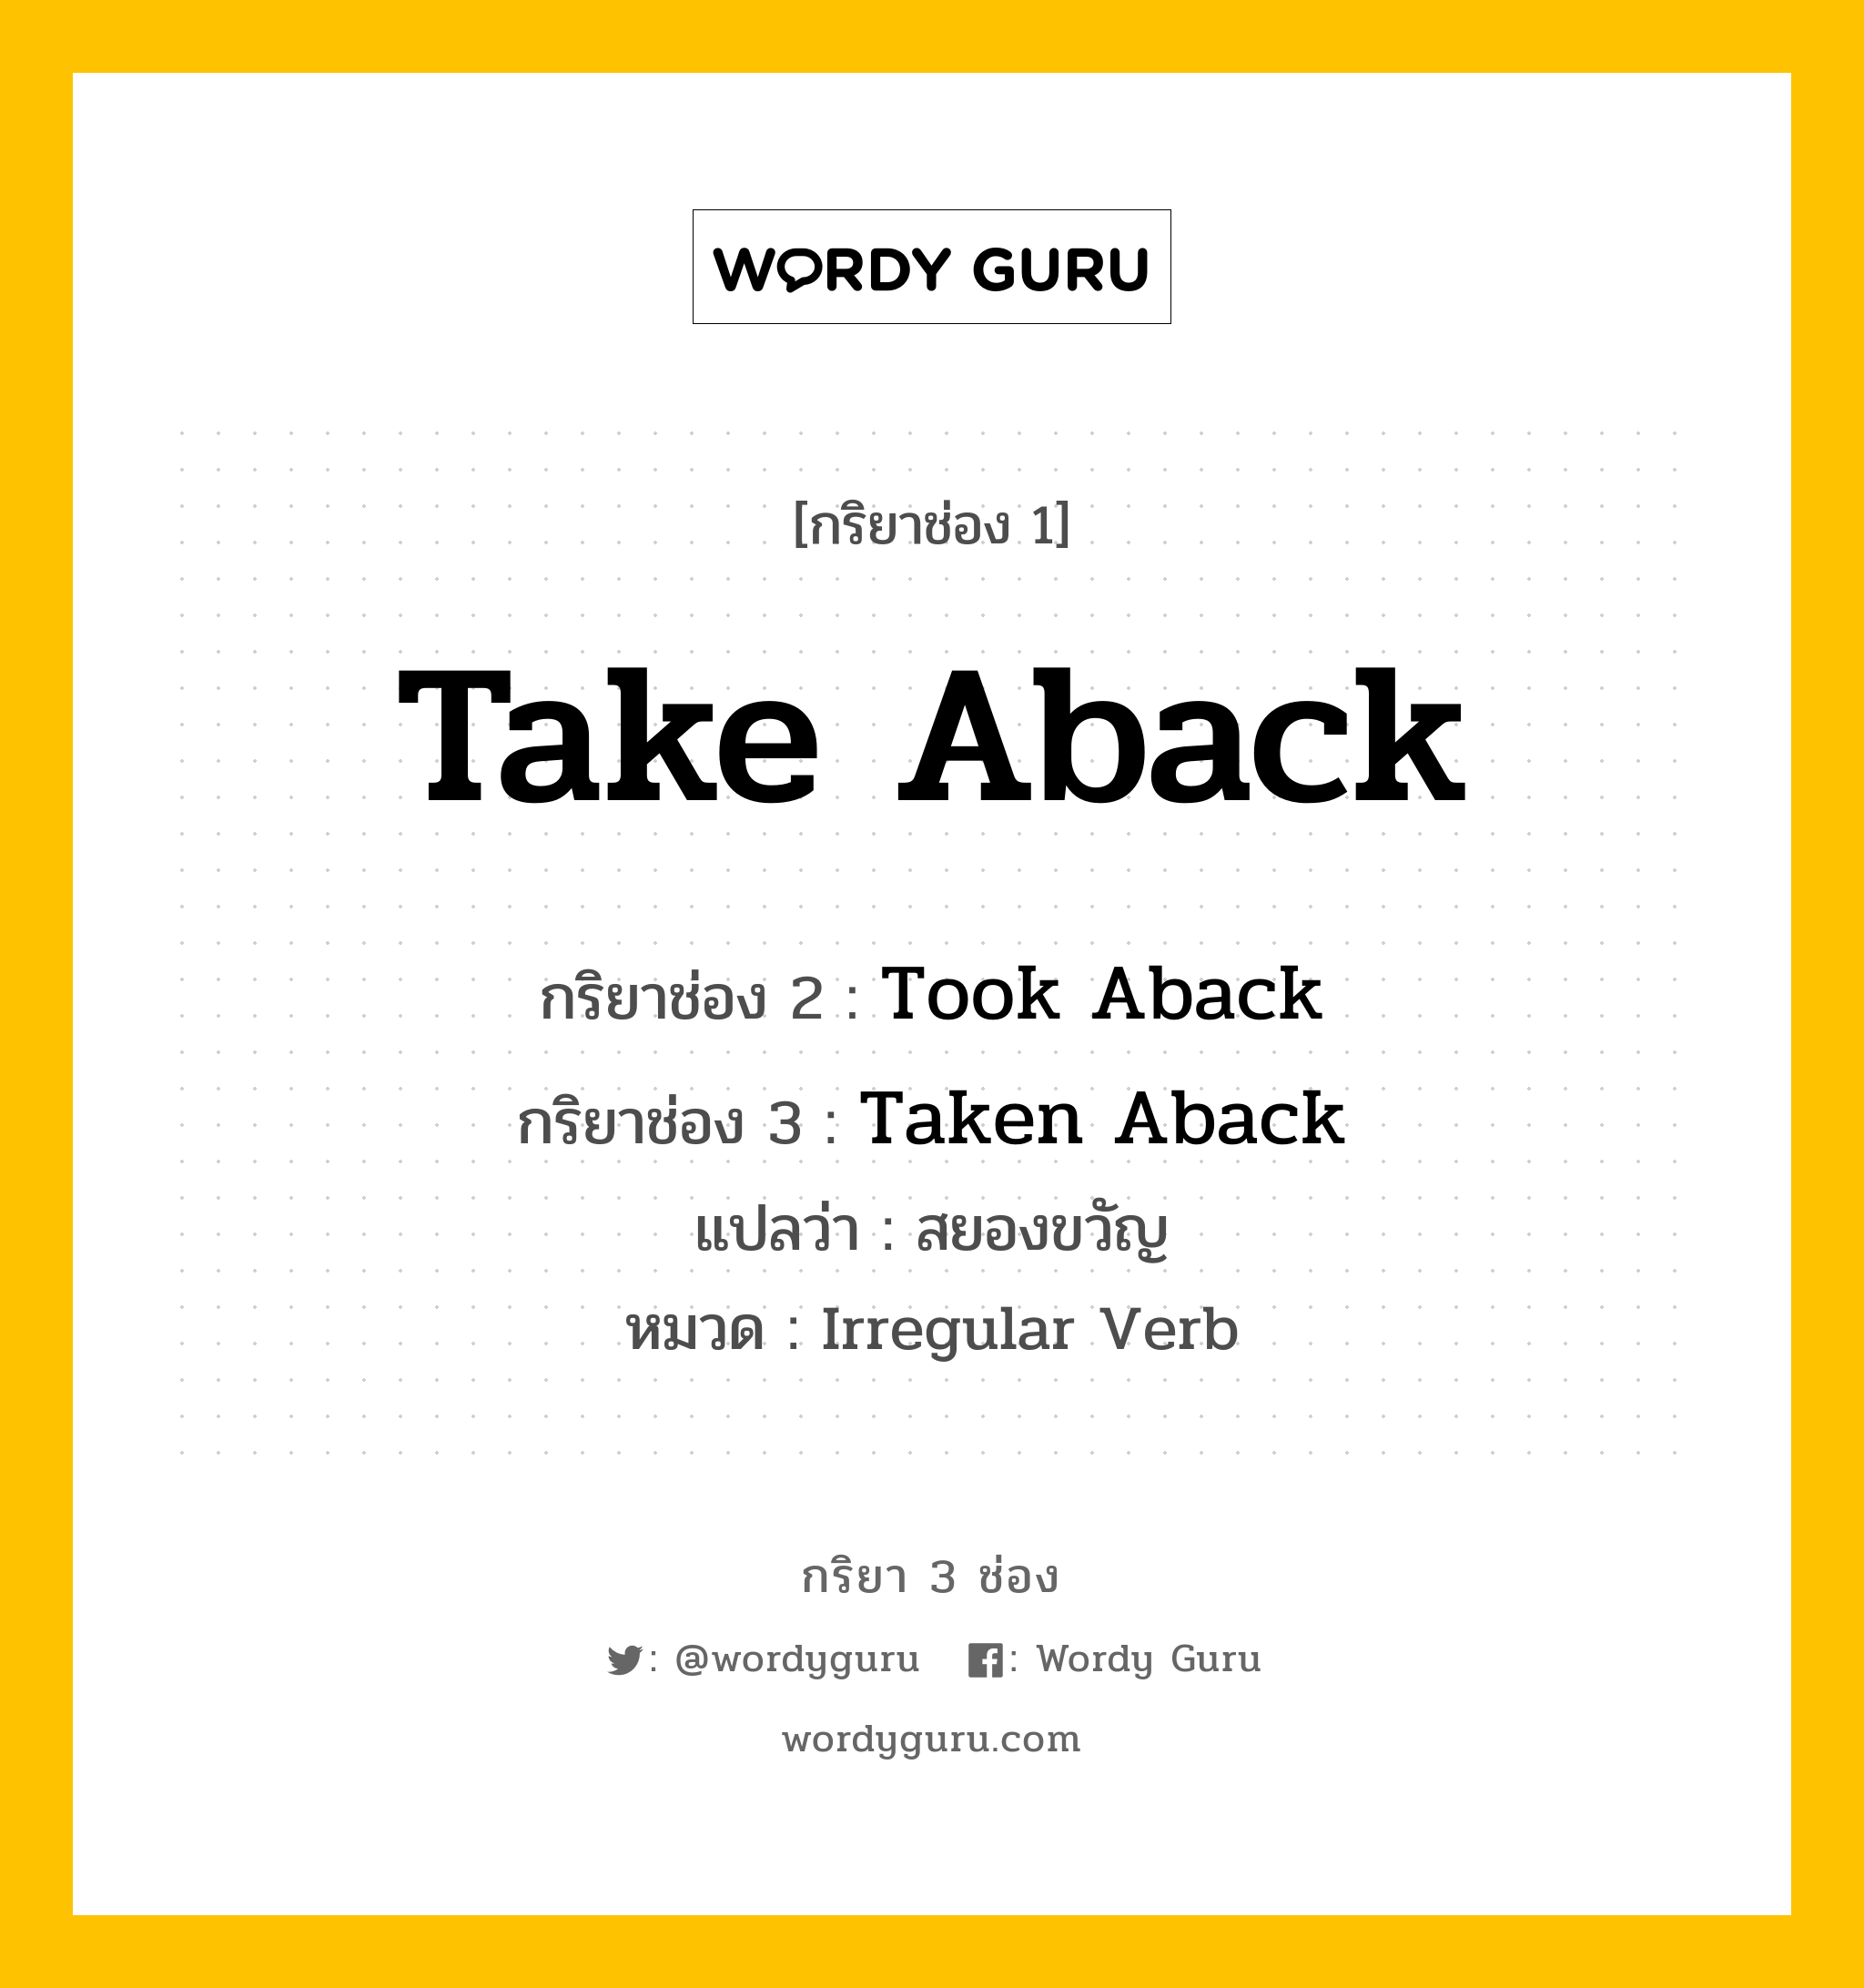 Take Aback มีกริยา 3 ช่องอะไรบ้าง? คำศัพท์ในกลุ่มประเภท Irregular Verb, กริยาช่อง 1 Take Aback กริยาช่อง 2 Took Aback กริยาช่อง 3 Taken Aback แปลว่า สยองขวัญ หมวด Irregular Verb หมวด Irregular Verb